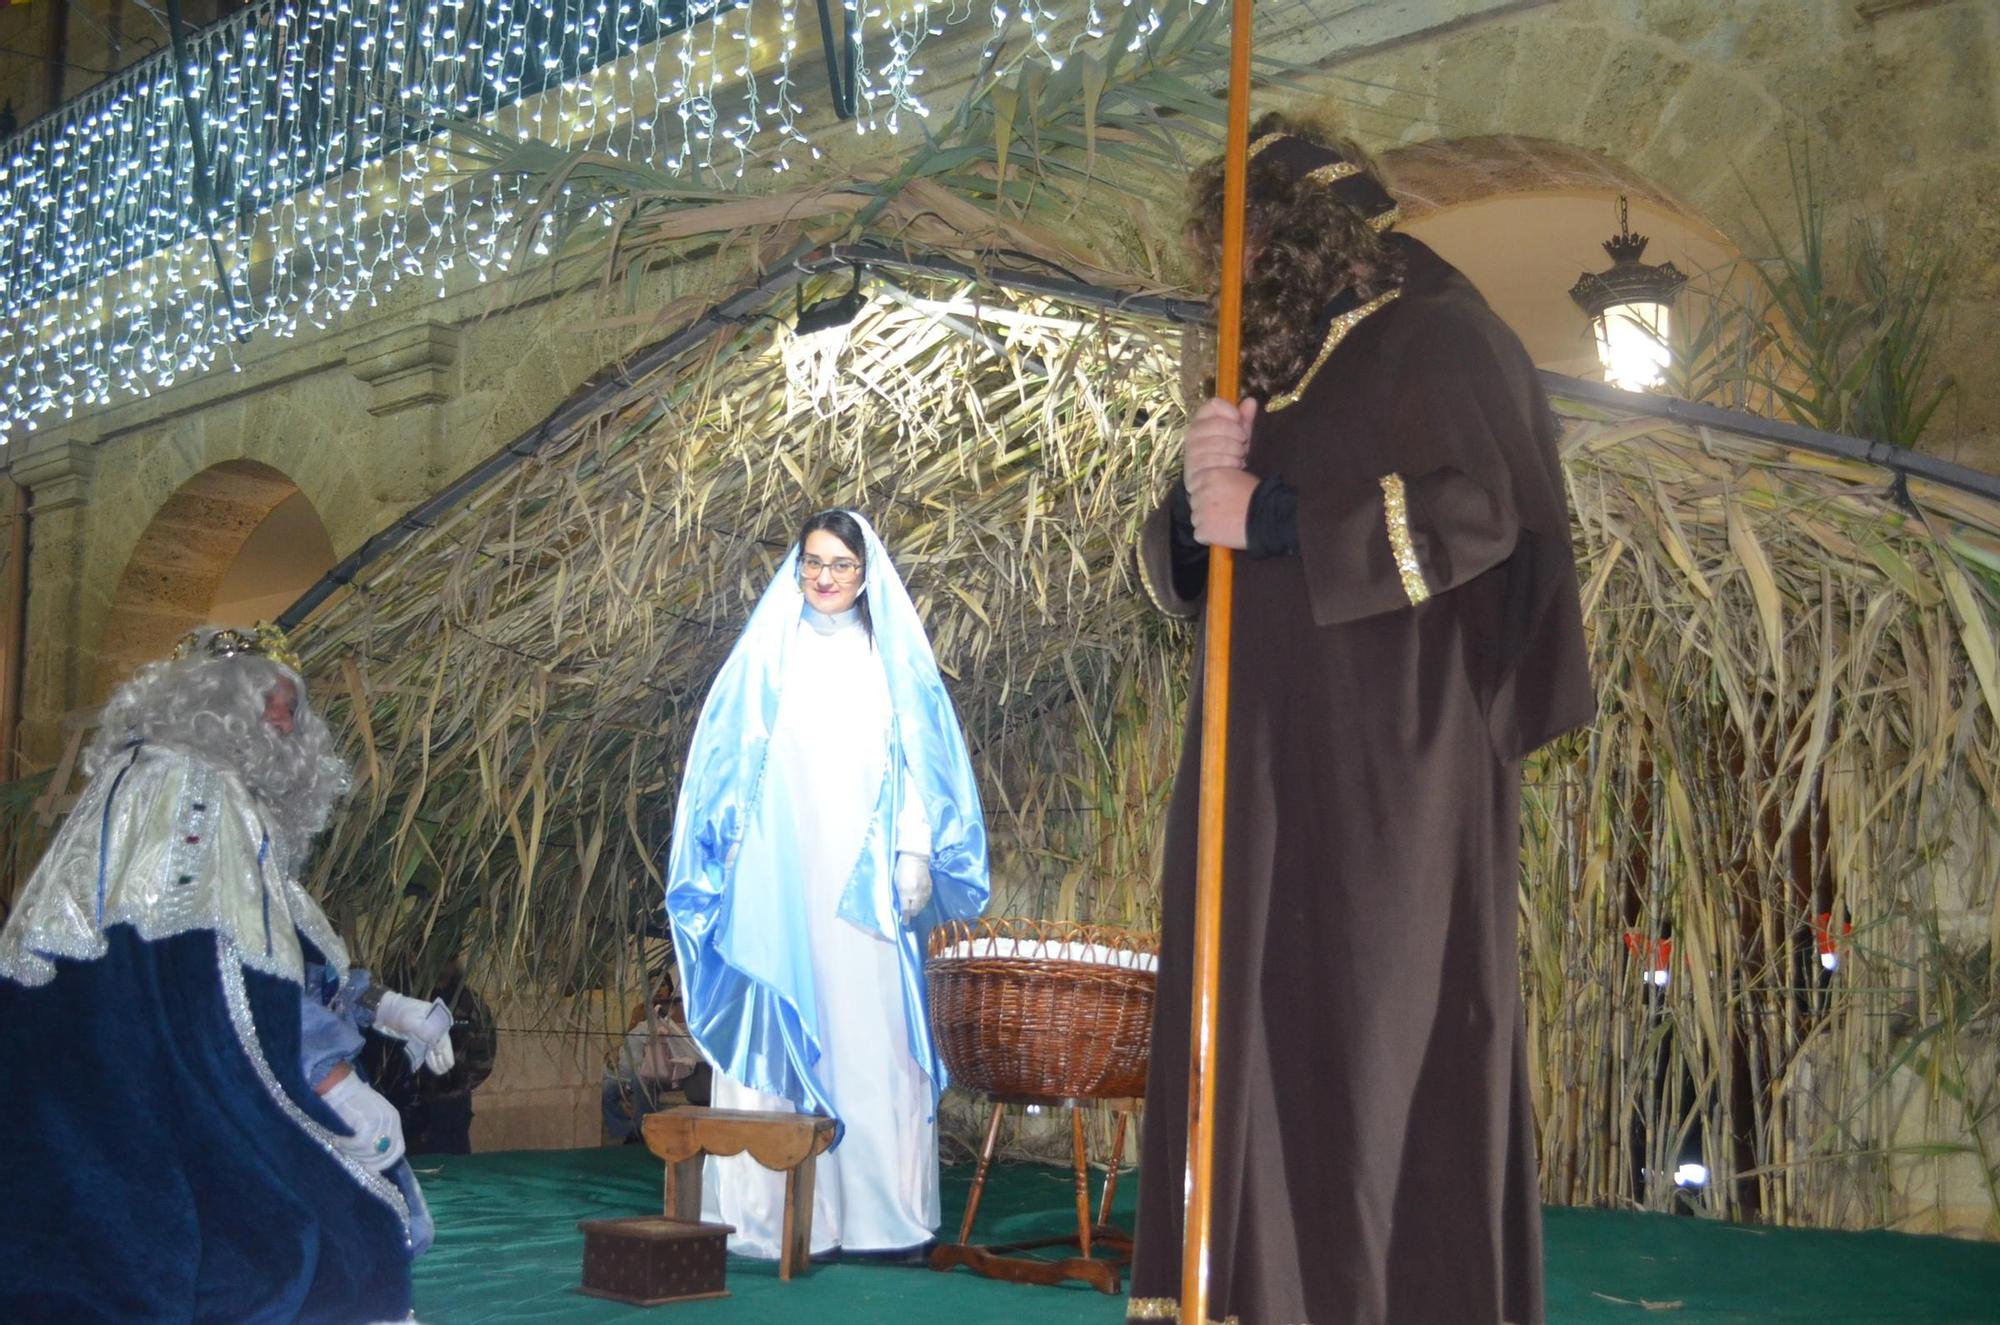 GALERÍA | Benavente vive la magia de la noche de Reyes